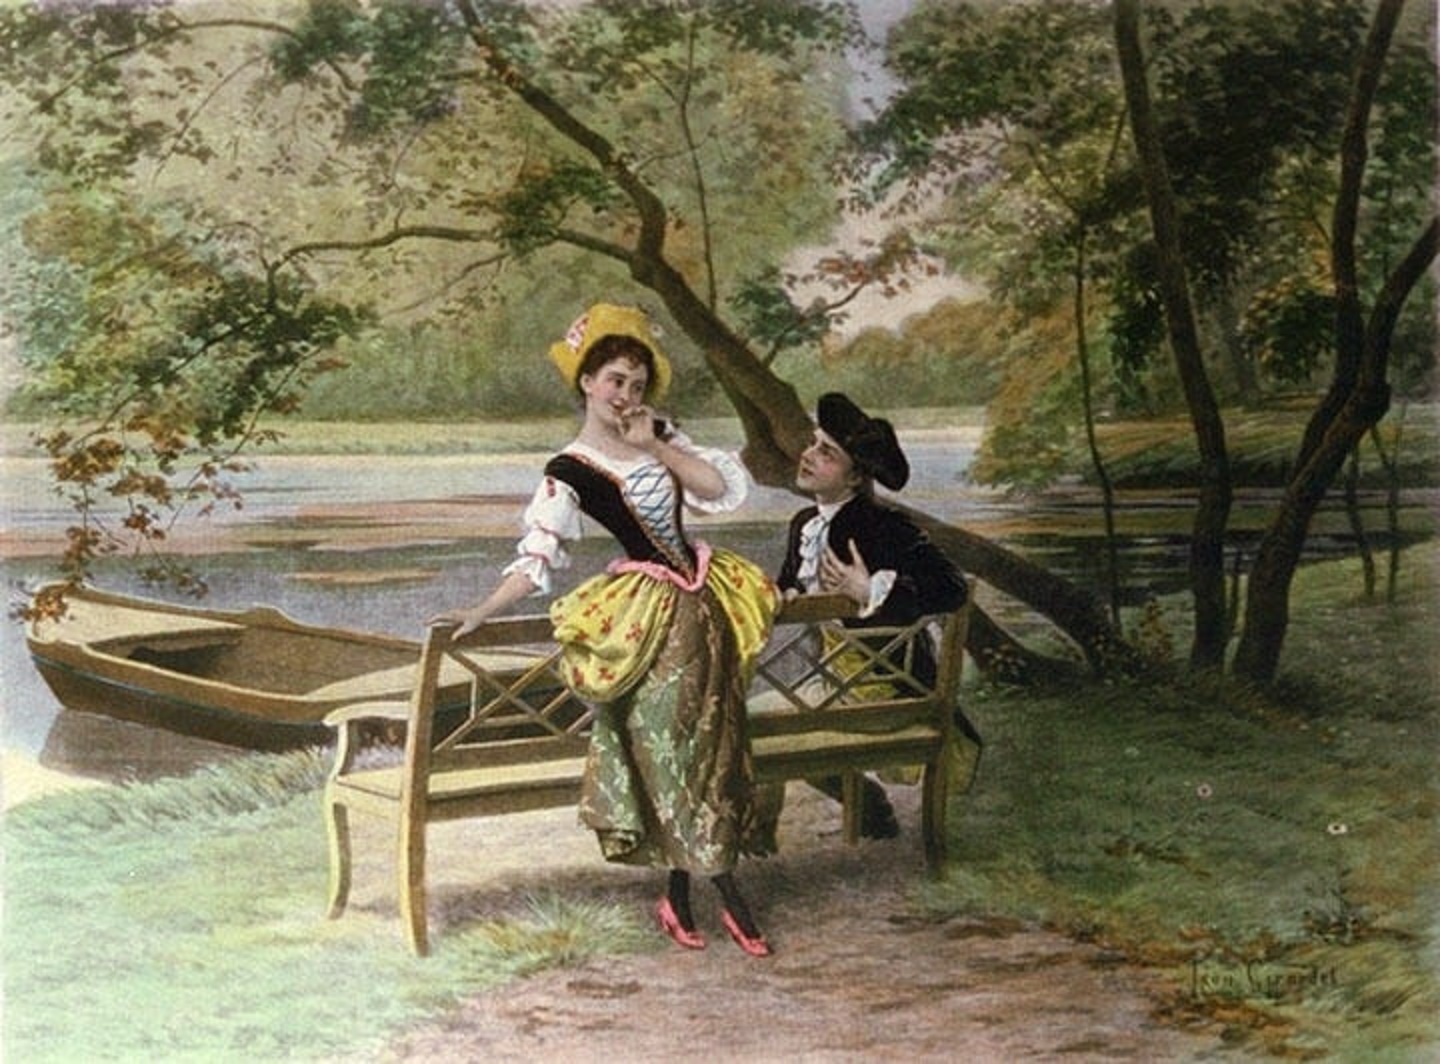 A pintura do francês Leon Girardet mostra um exemplo dos primórdios dessa prática